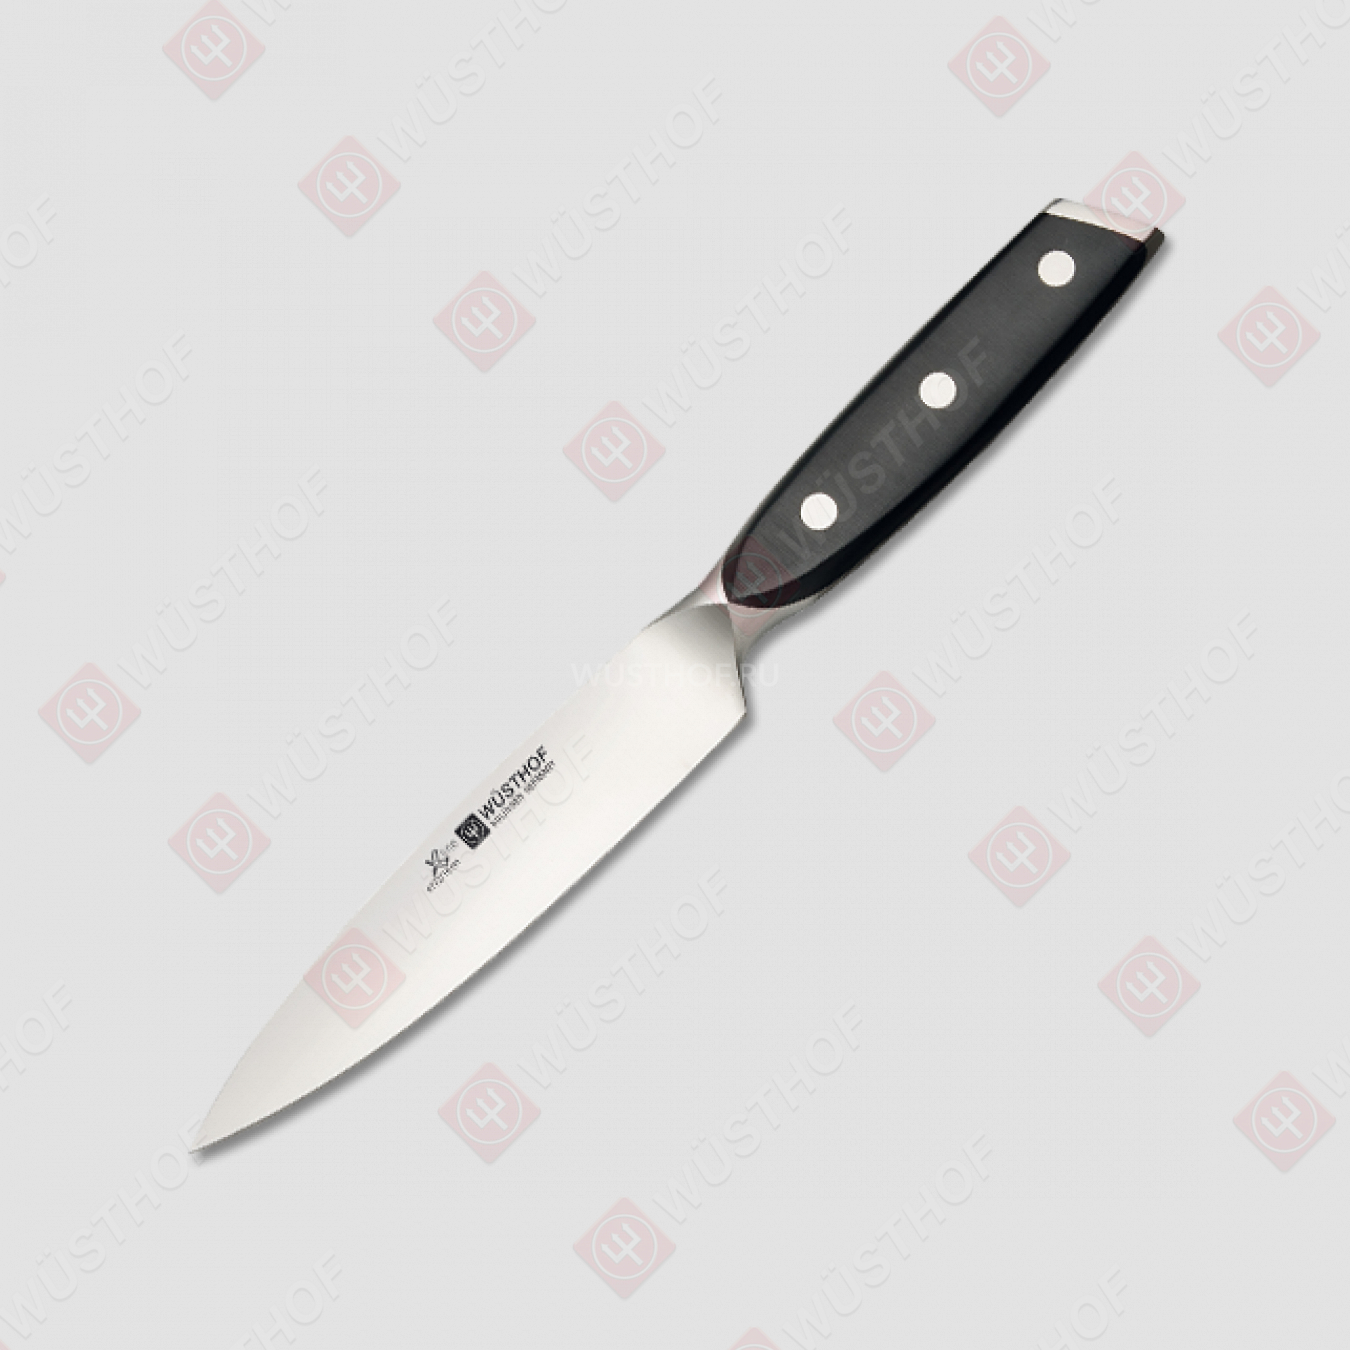 Нож для нарезки 16 см с керамическим покрытием на клинке, серия Xline, WUESTHOF, Золинген, Германия